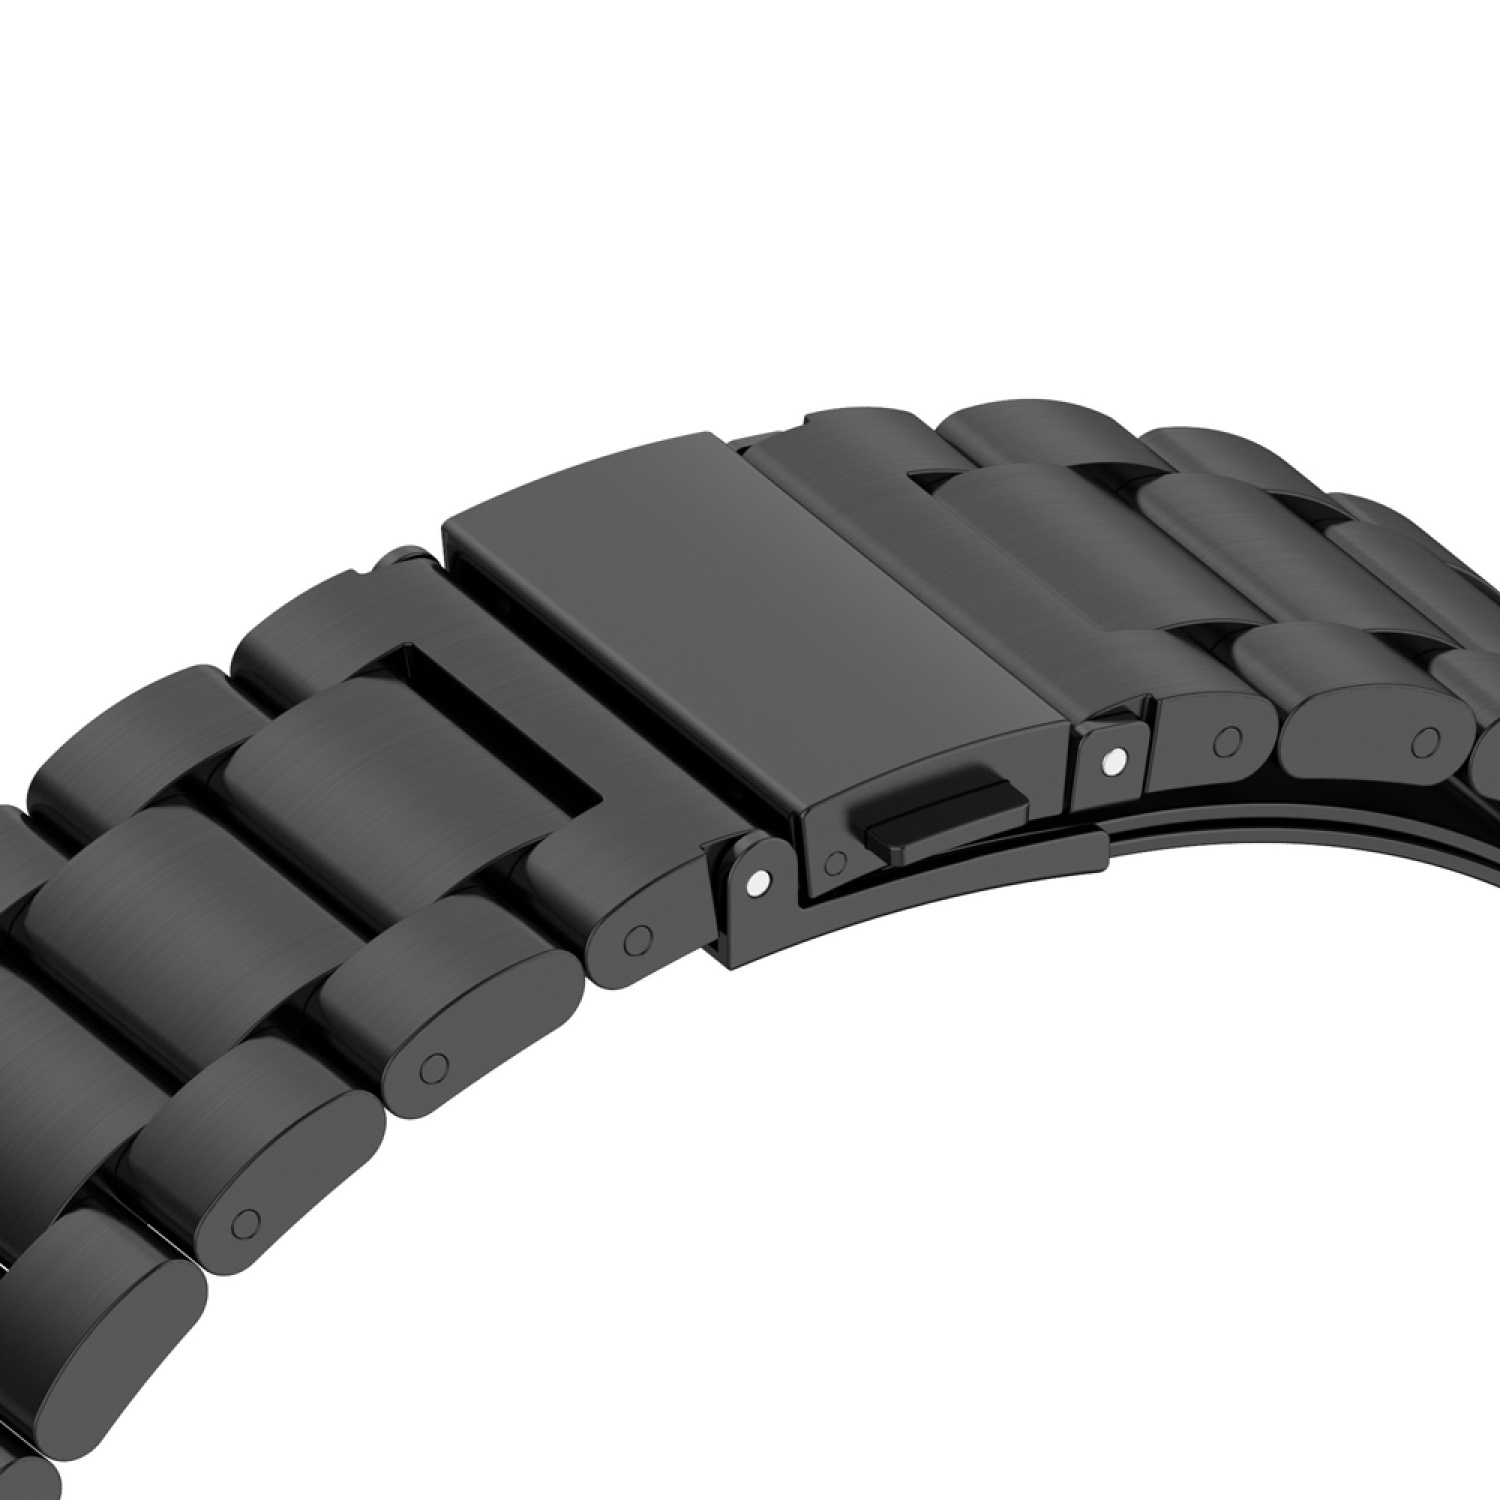 Ersatzband, Huawei, KÖNIG DESIGN 46mm, Schwarz 3 Sportarmband, GT Watch